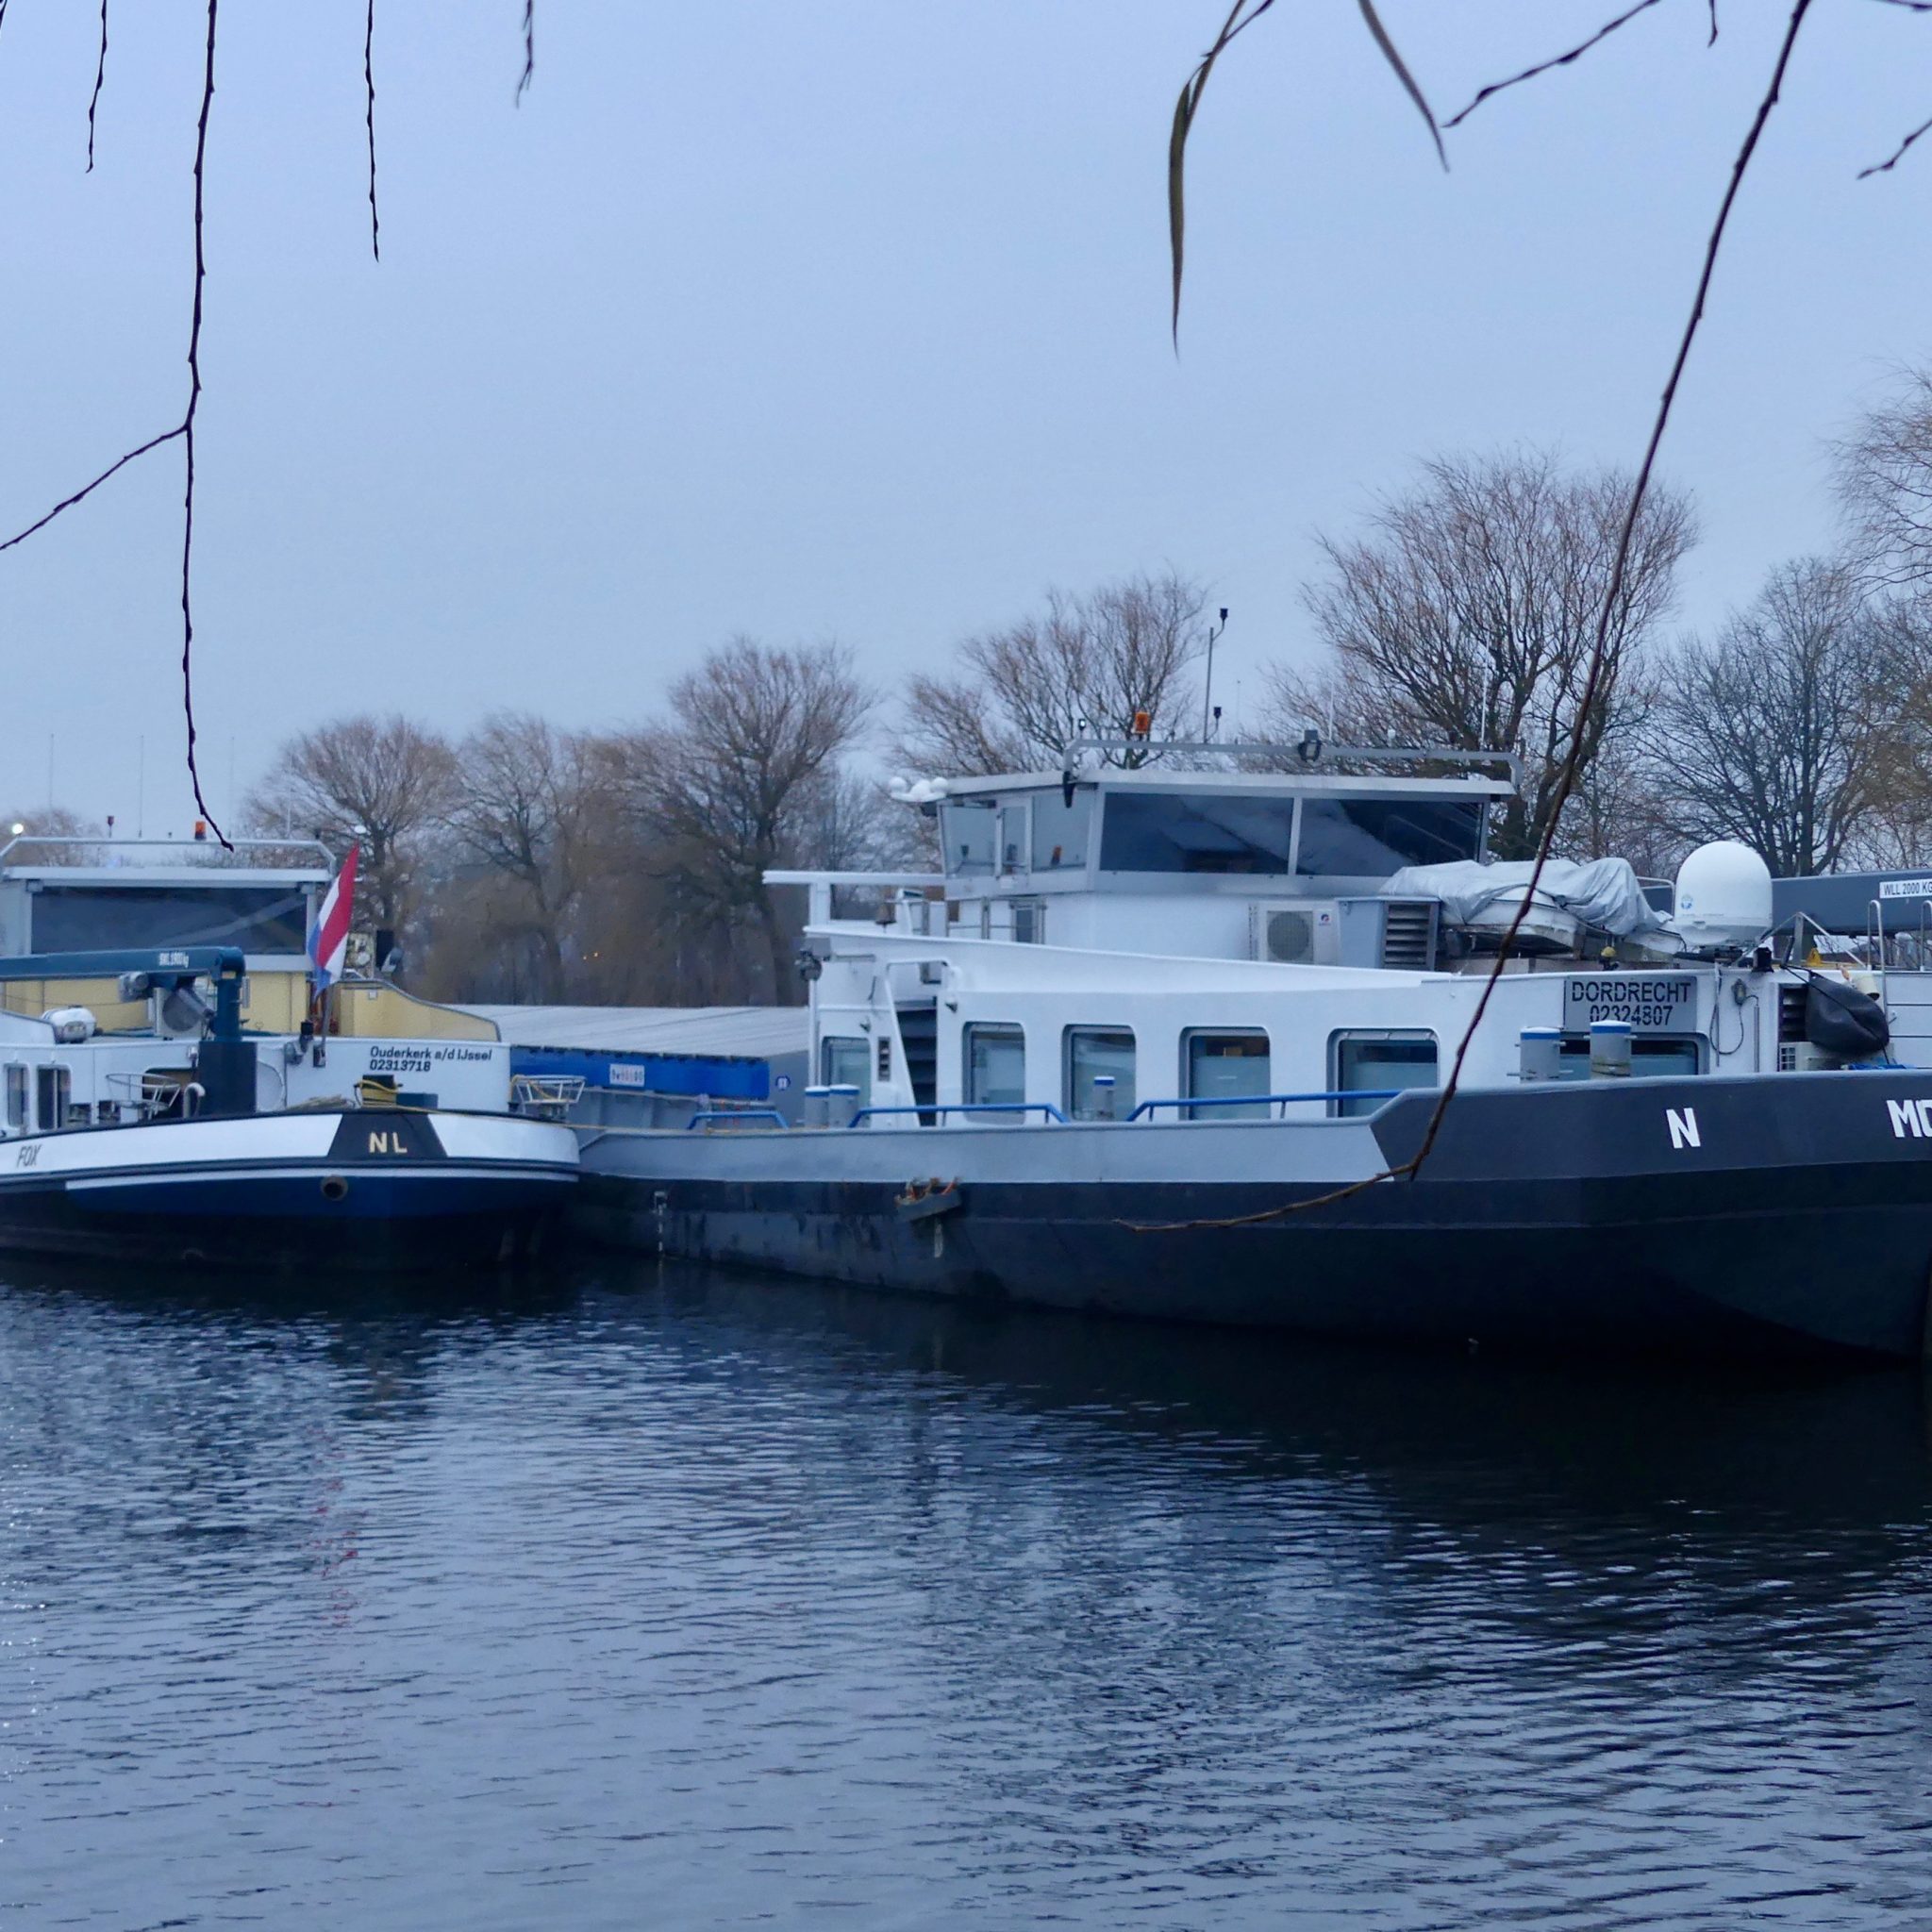 Twee bij het fosfine-incident betrokken schepen Fox en Mordomia aan de palen in de Amsterdamse Neptunushaven. Dichtbij liggen ook twee geladen duwbakken. (Foto Heere Heeresma jr.)